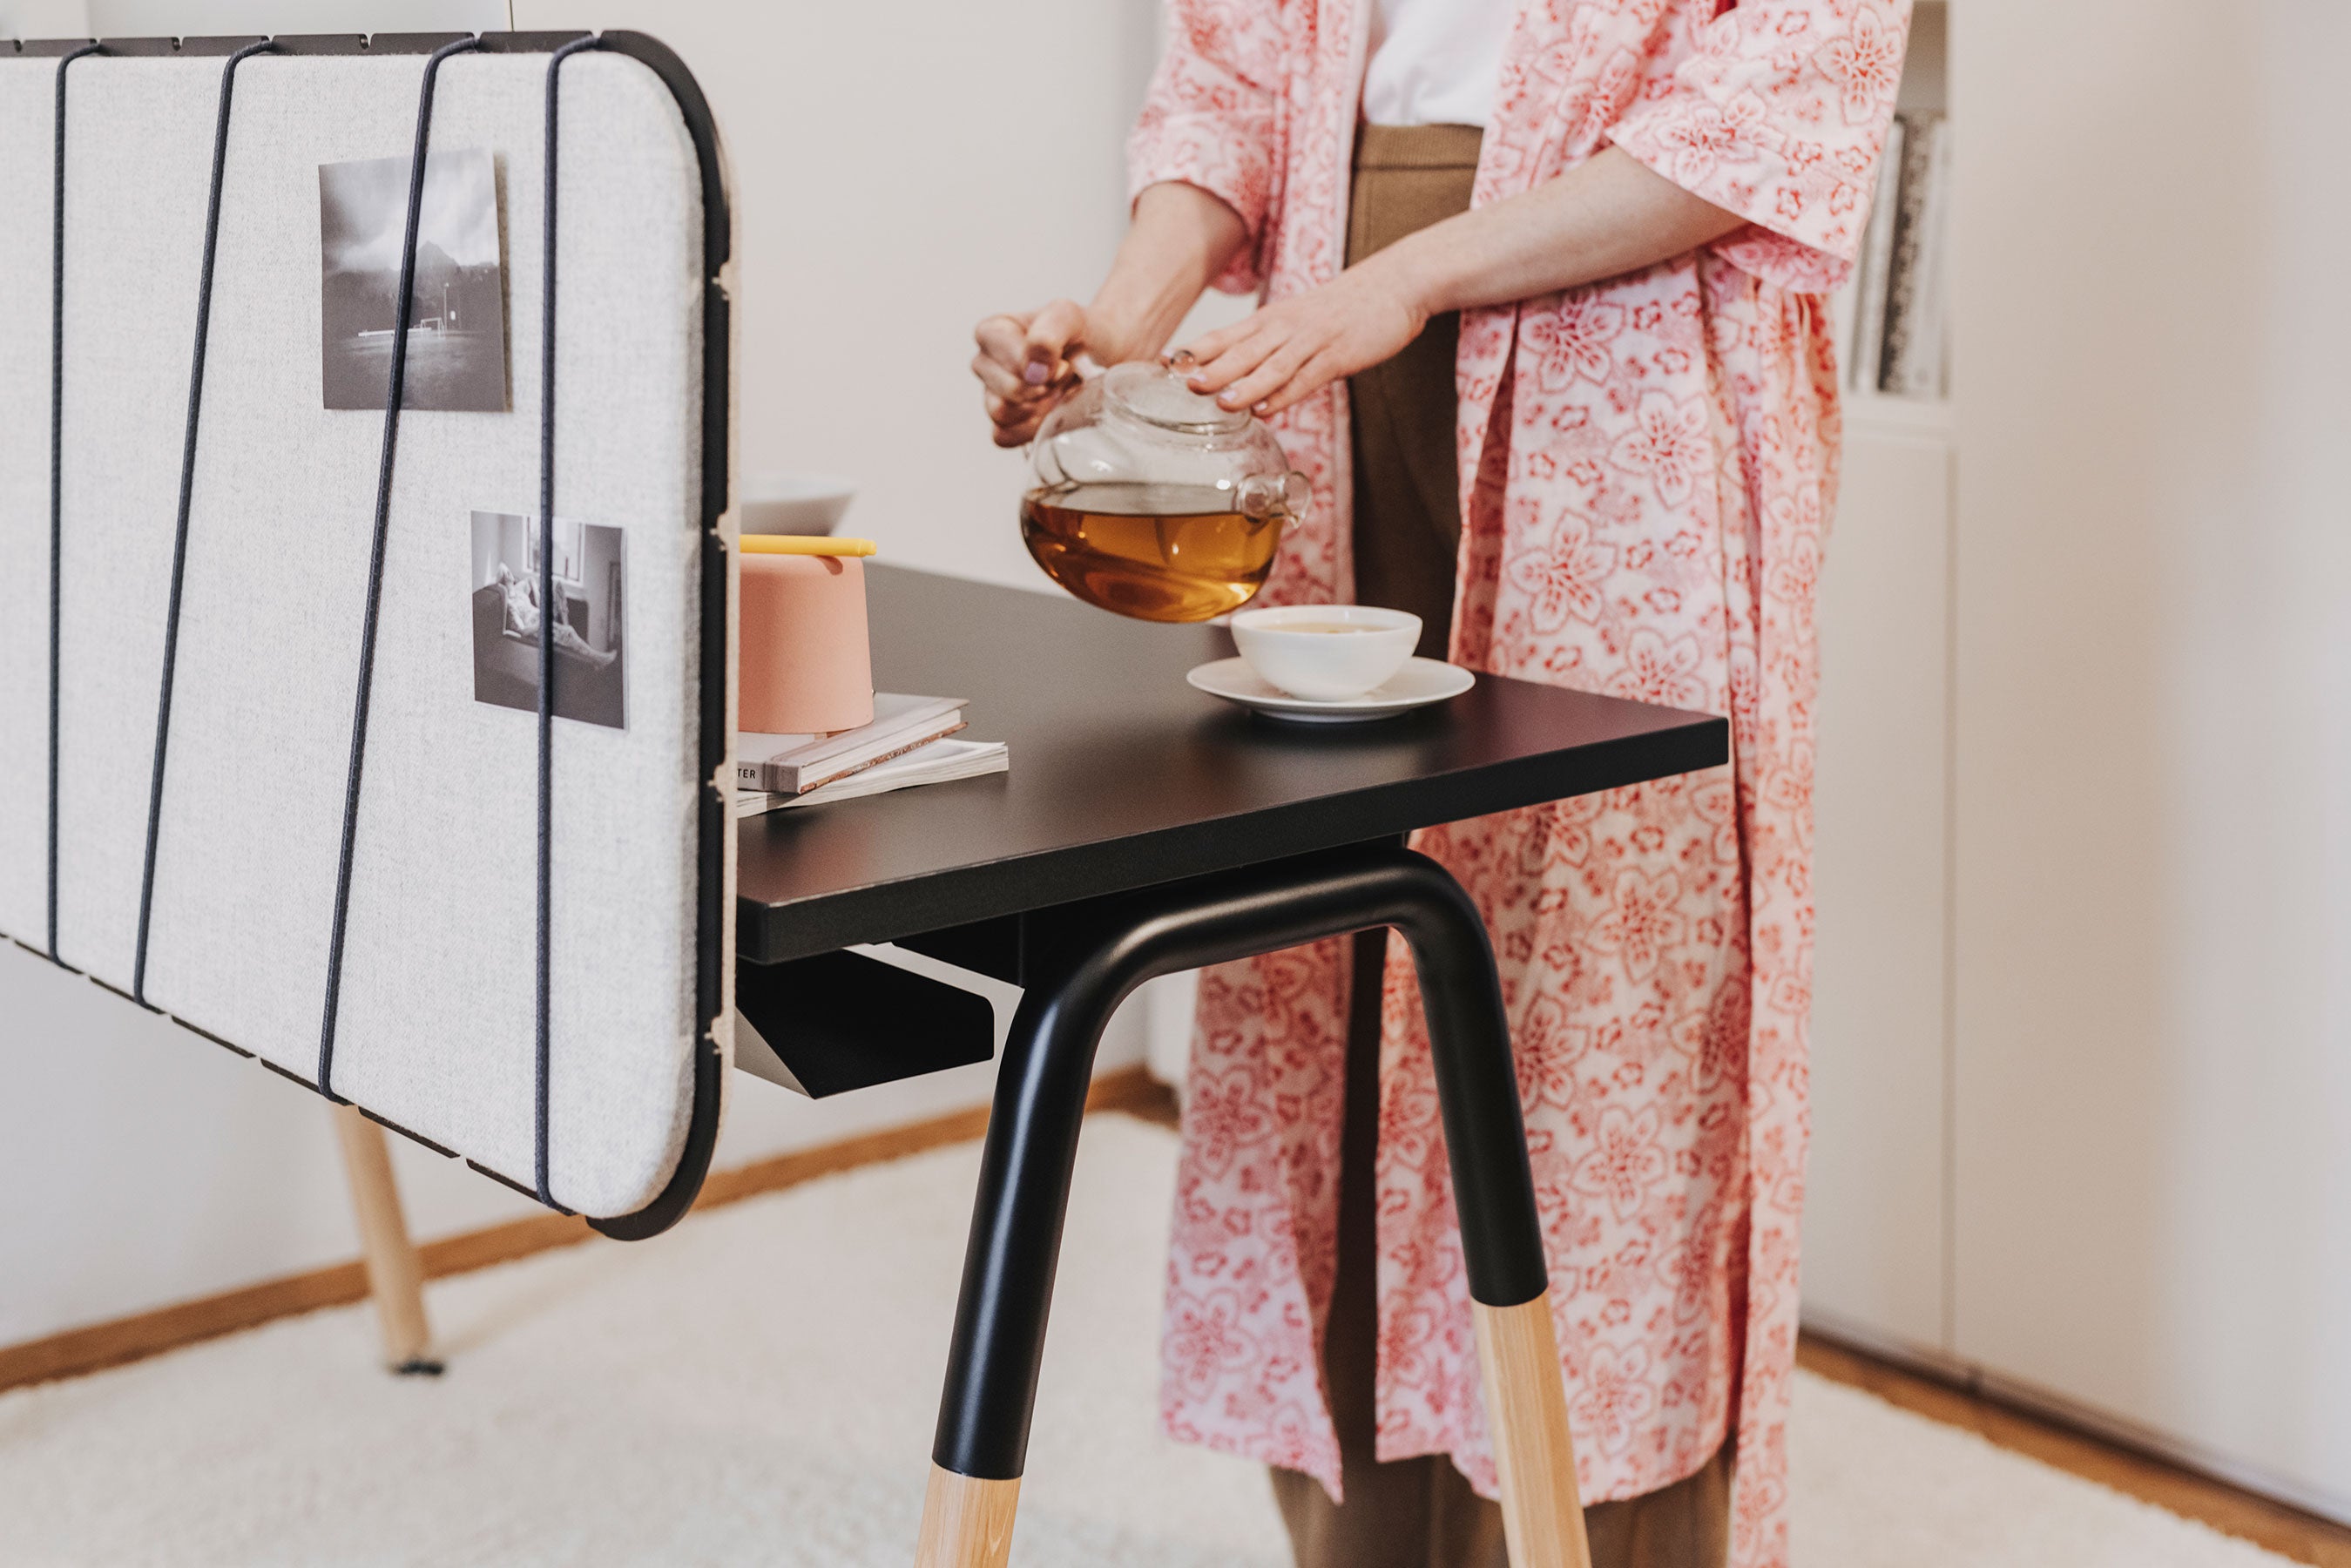 Man sieht in Nahaufnahme einen Arbeitsplatz mit einem schwarzen Arbeitstisch, der Tischbeine aus Holz hat und die Pinnwand ist in grau mit Flexbändern an den Tisch fixiert. Auf ihr befinden sich zwei Fotos. Hinter dem Tisch steht eine Frau und schenkt sich Tee in ein weißes Häferl. Sie trägt einen rosafarbenen floralen Kimono.